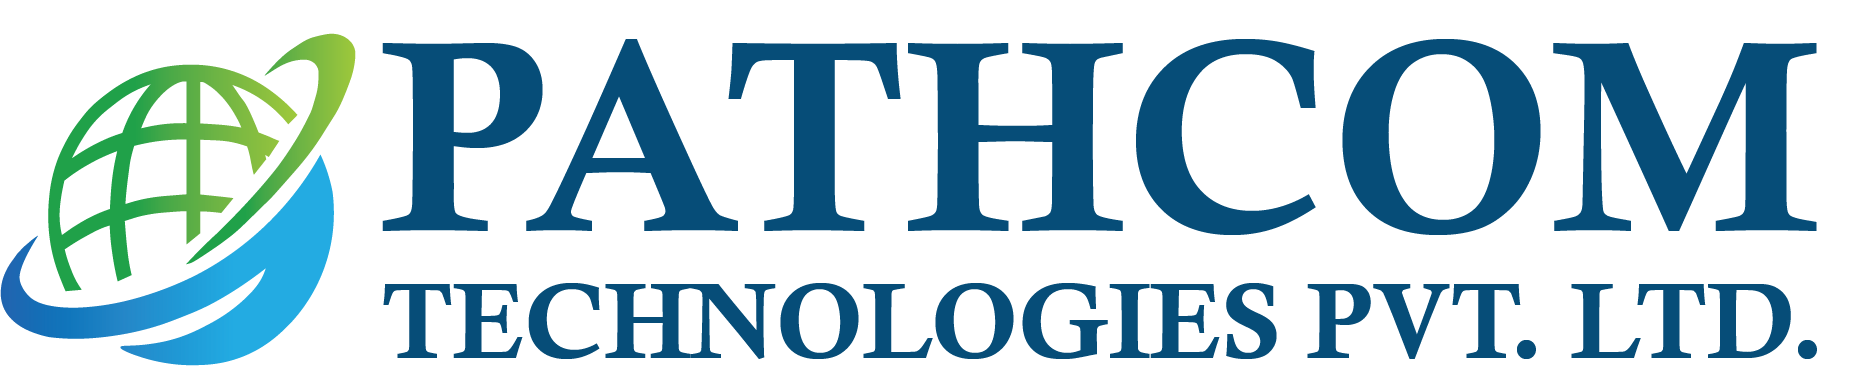 Pathcom Technologies